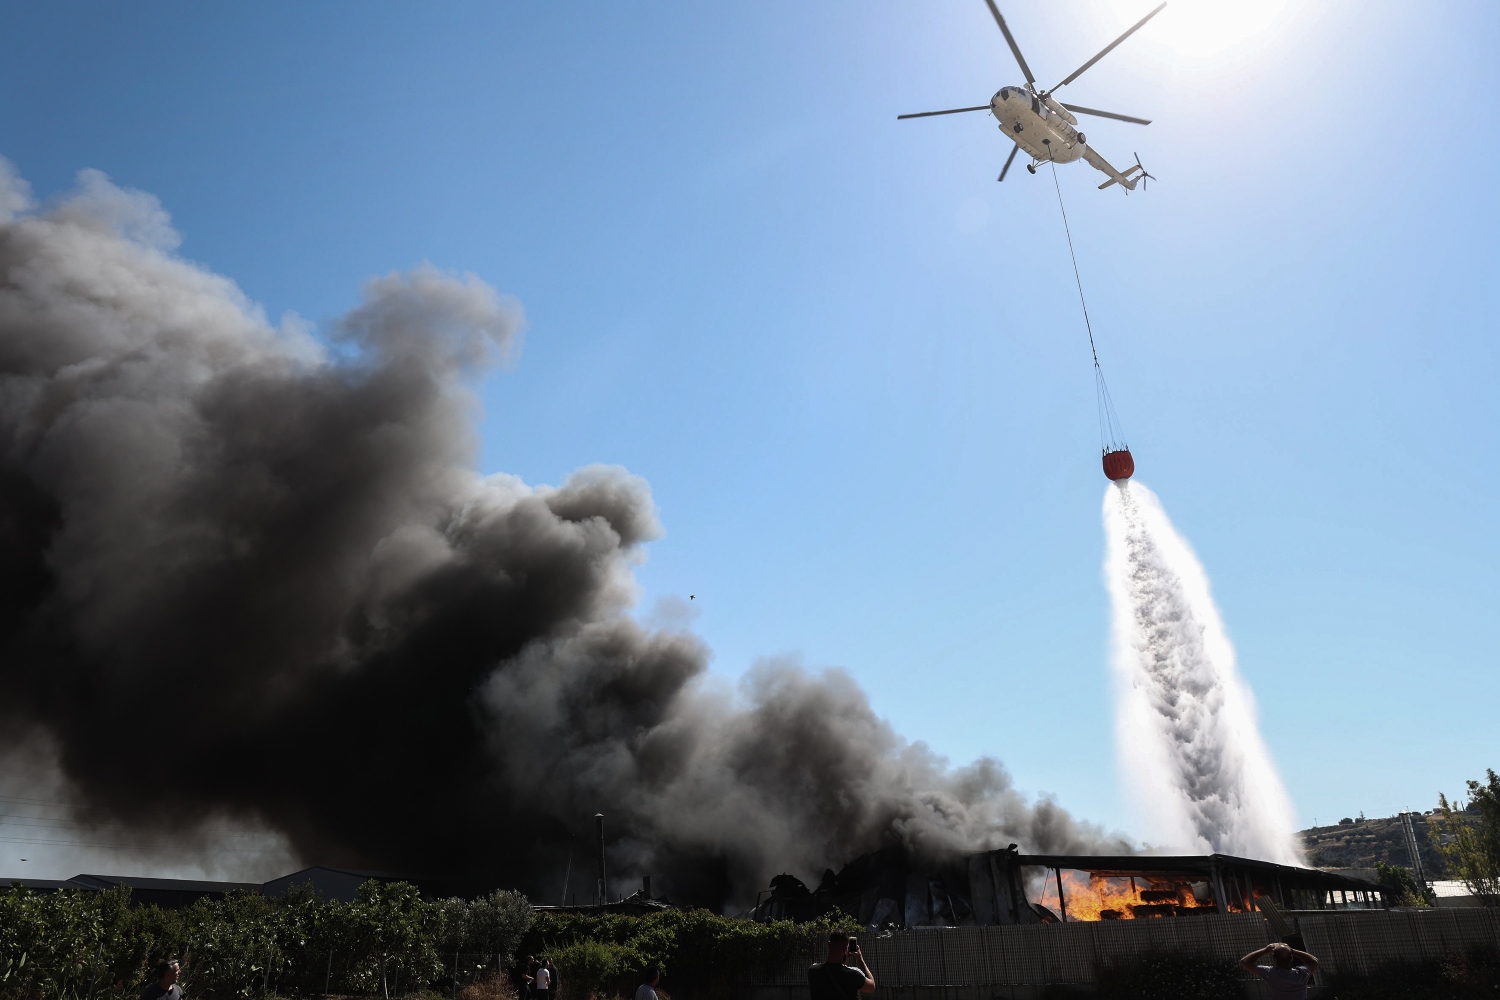 Σάμος: Έπεσε ελικόπτερο που έπαιρνε μέρος σε κατάσβεση φωτιάς